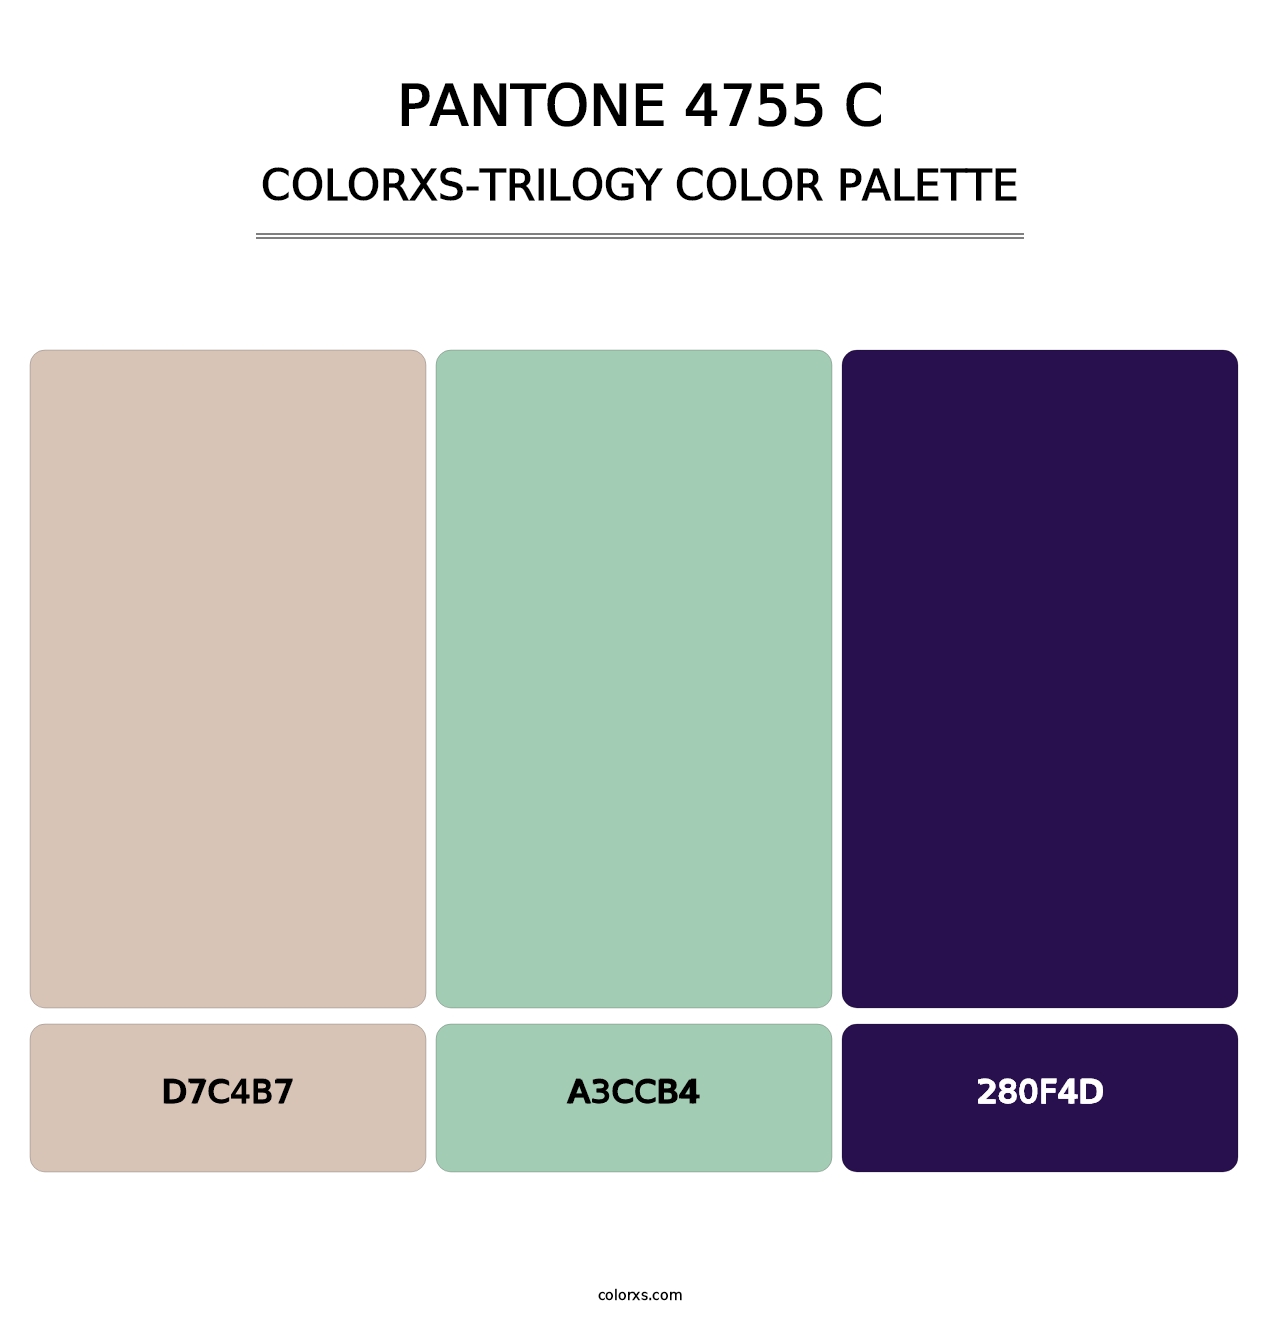 PANTONE 4755 C - Colorxs Trilogy Palette